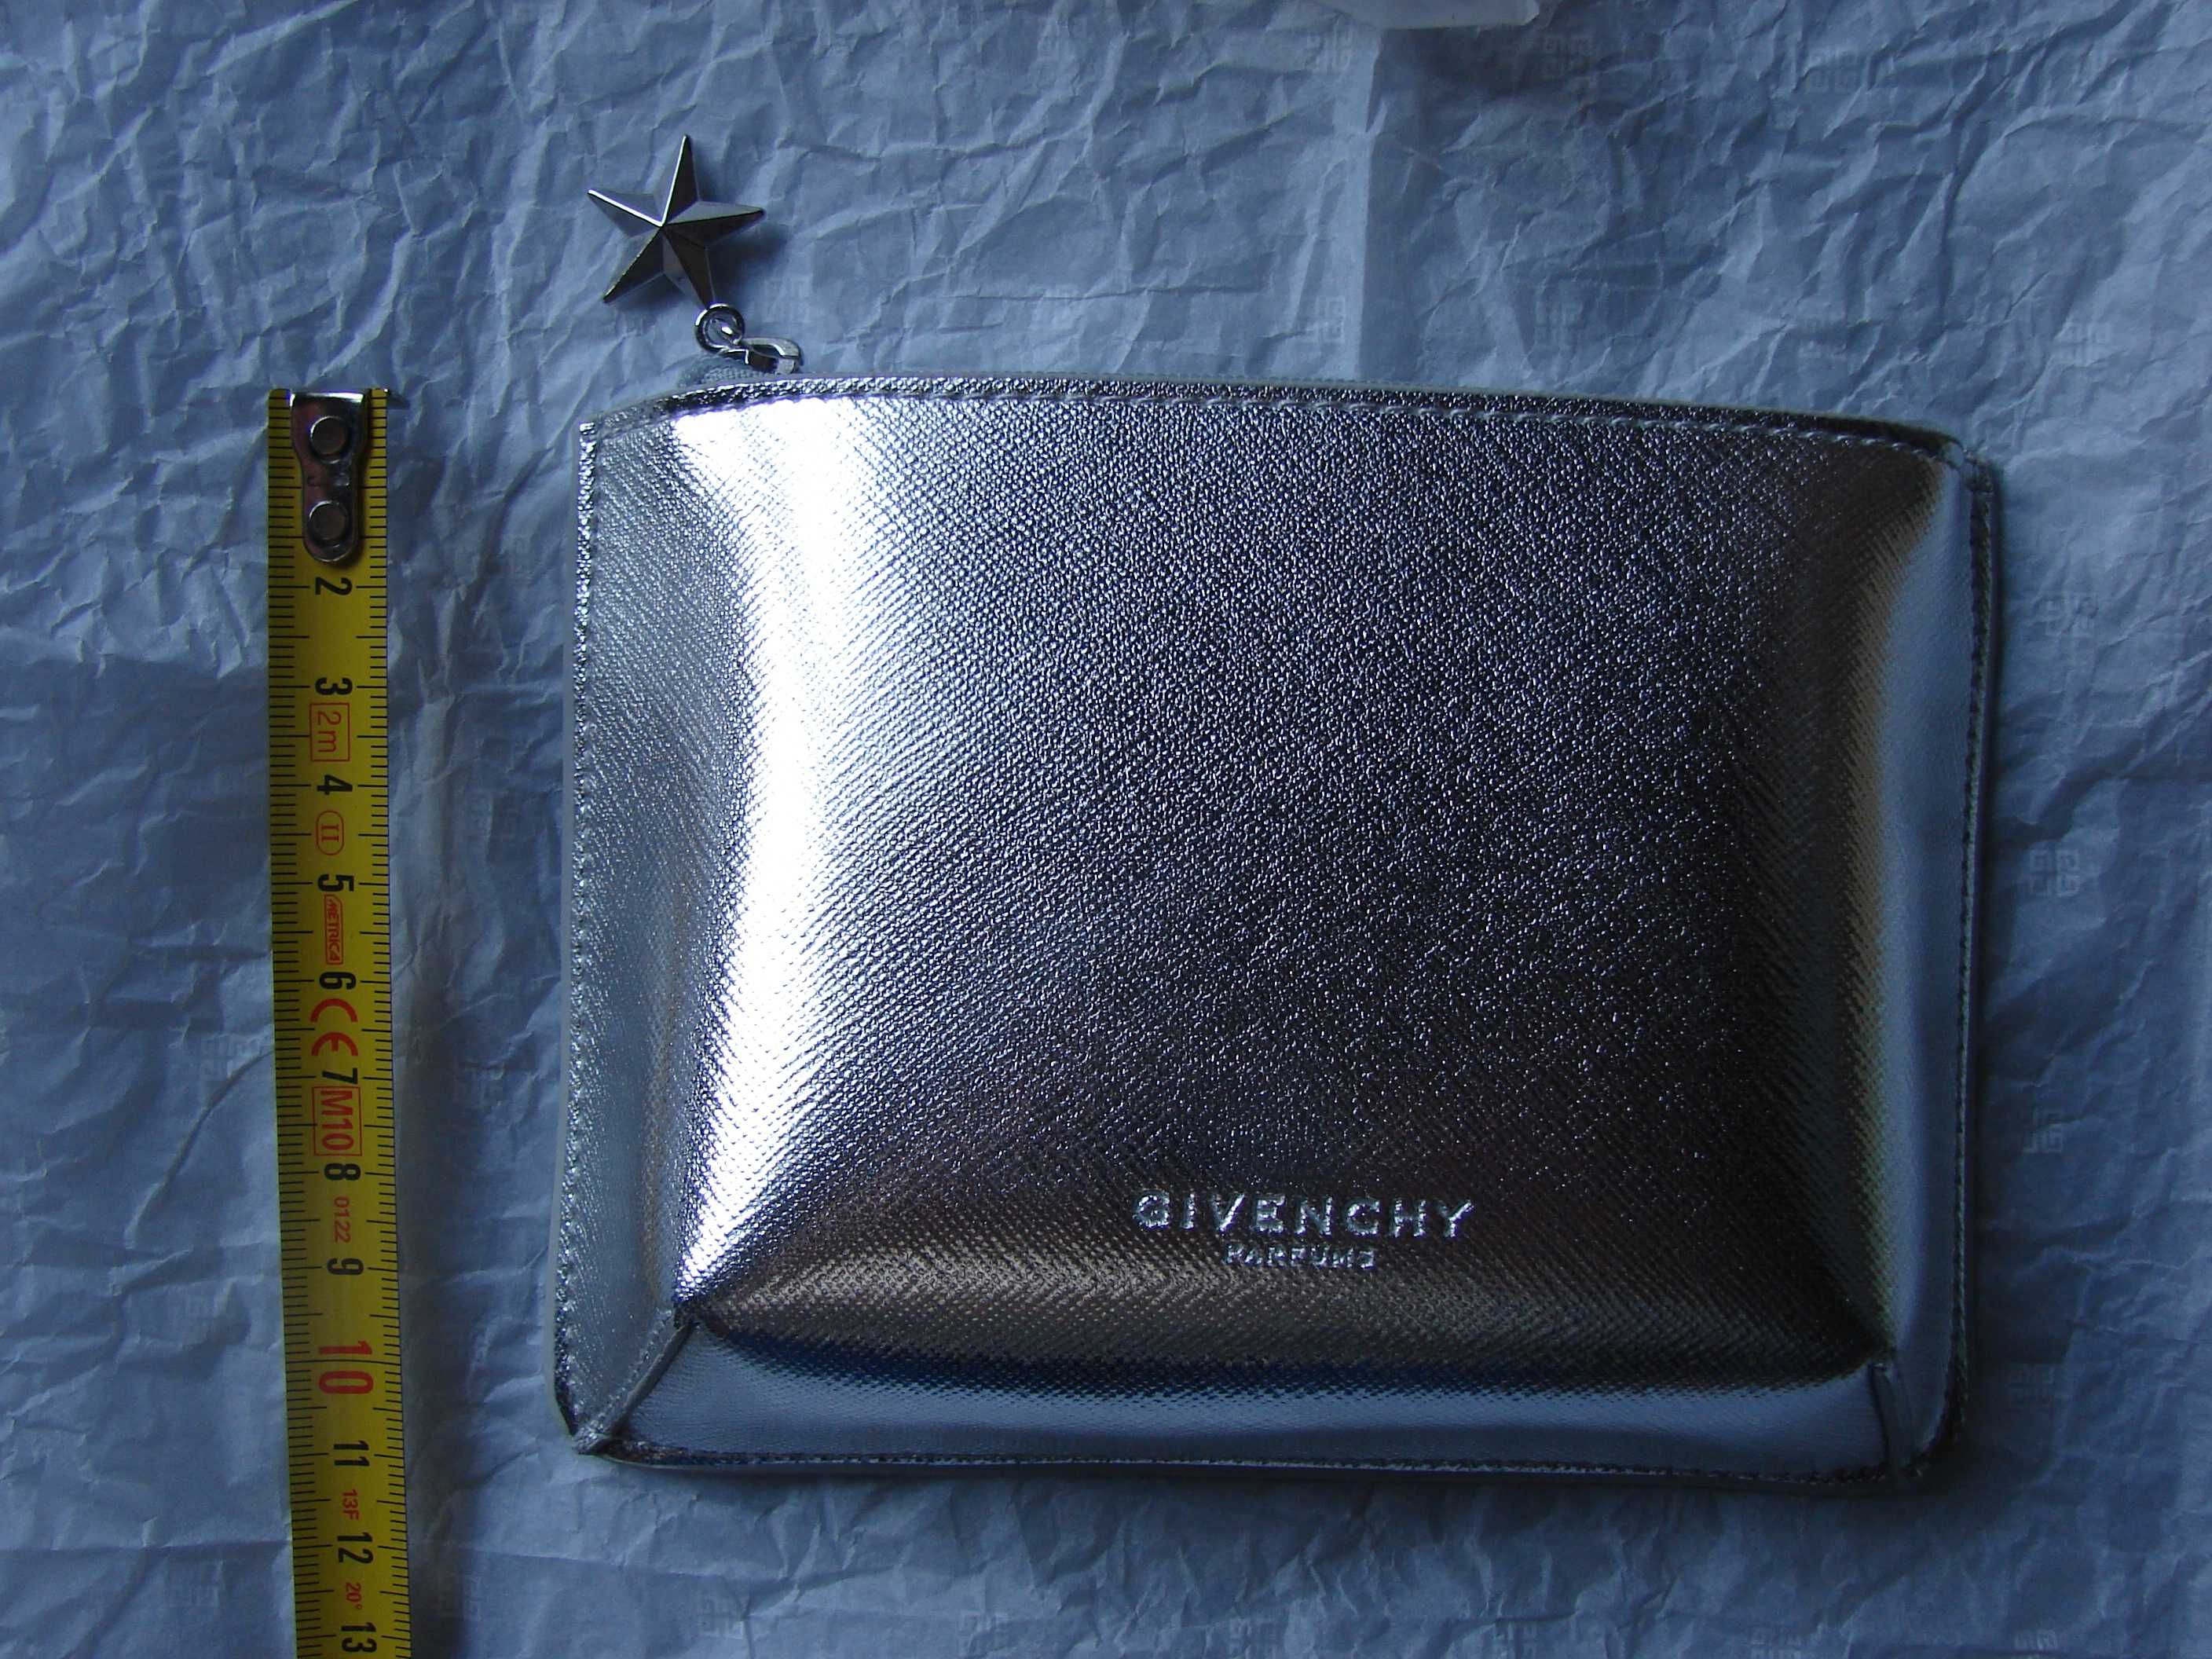 Подарочный набор Givenchy Very Irresistible: кocметичка-клатч и napфюм